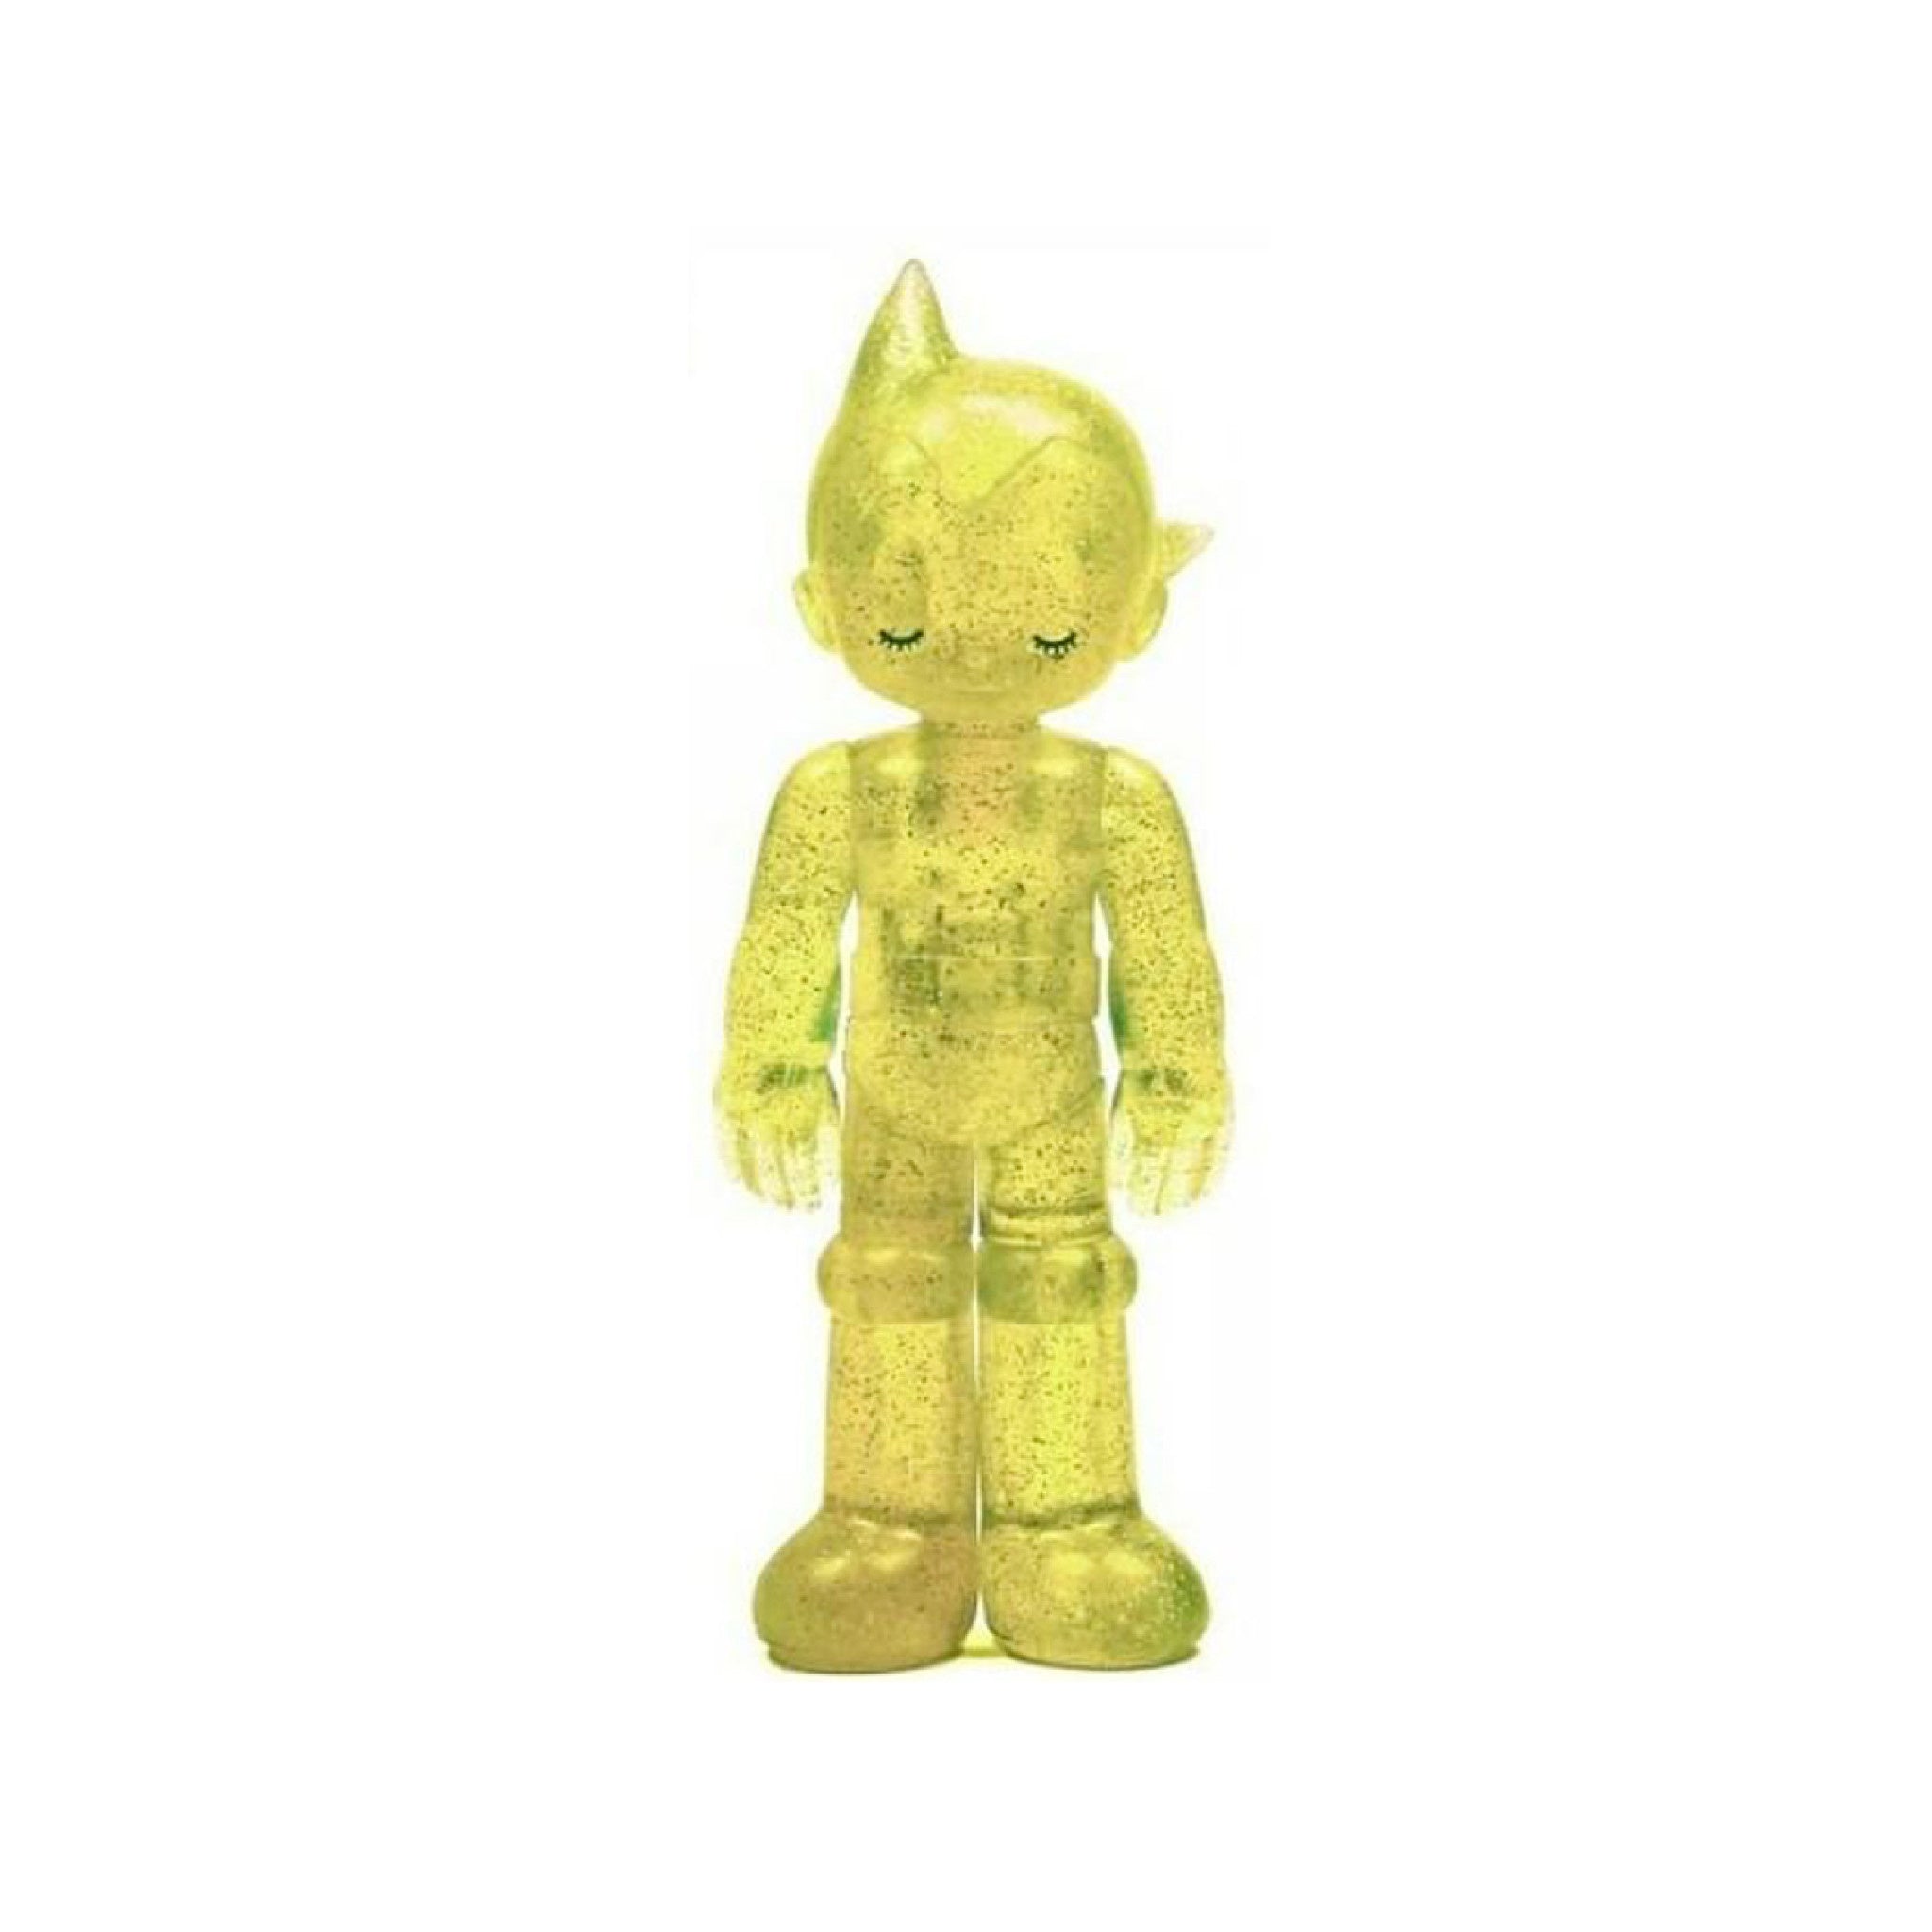 Astro Boy PVC Soda Series - Clear Yellow - Wynwood Walls Shop